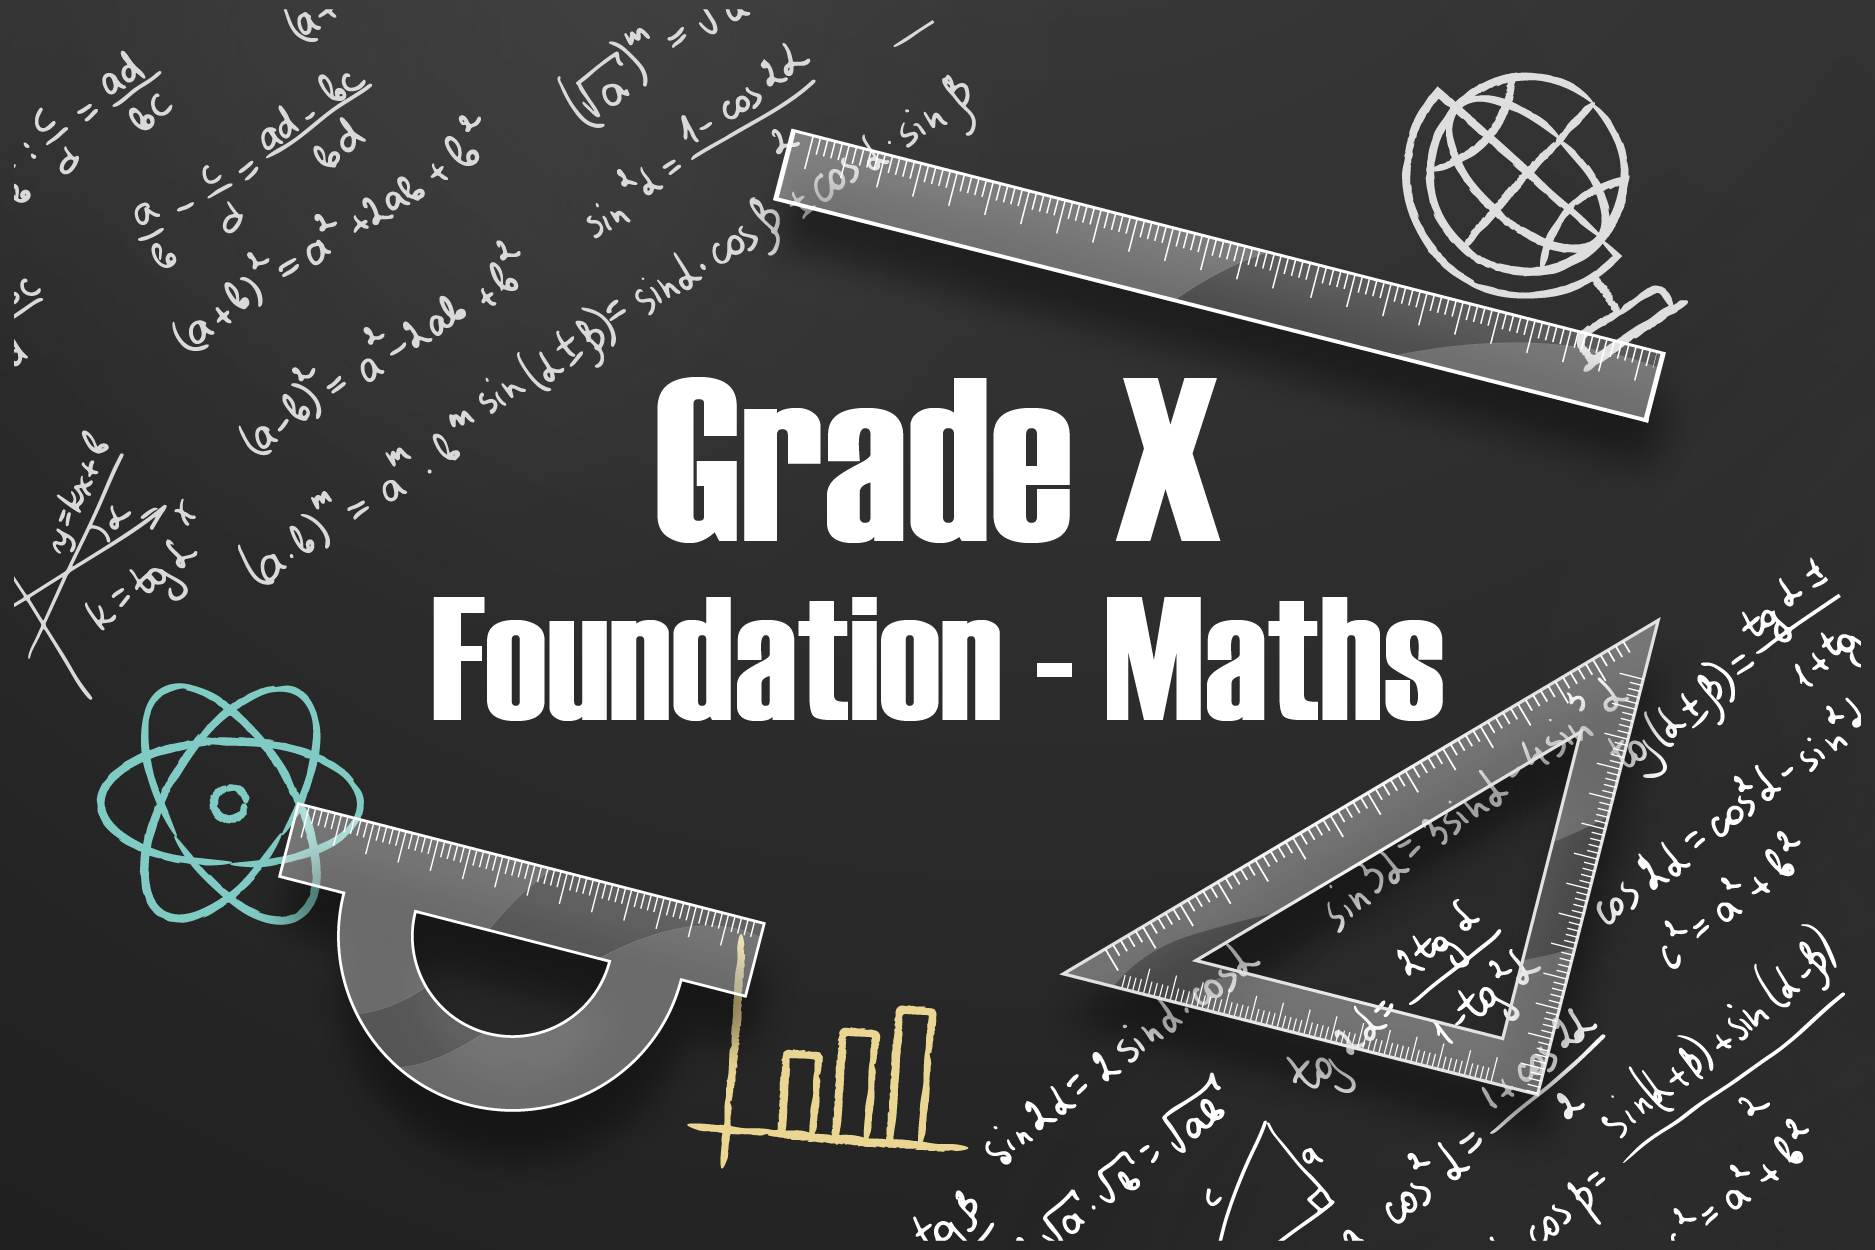 Grade X Foundation - Maths